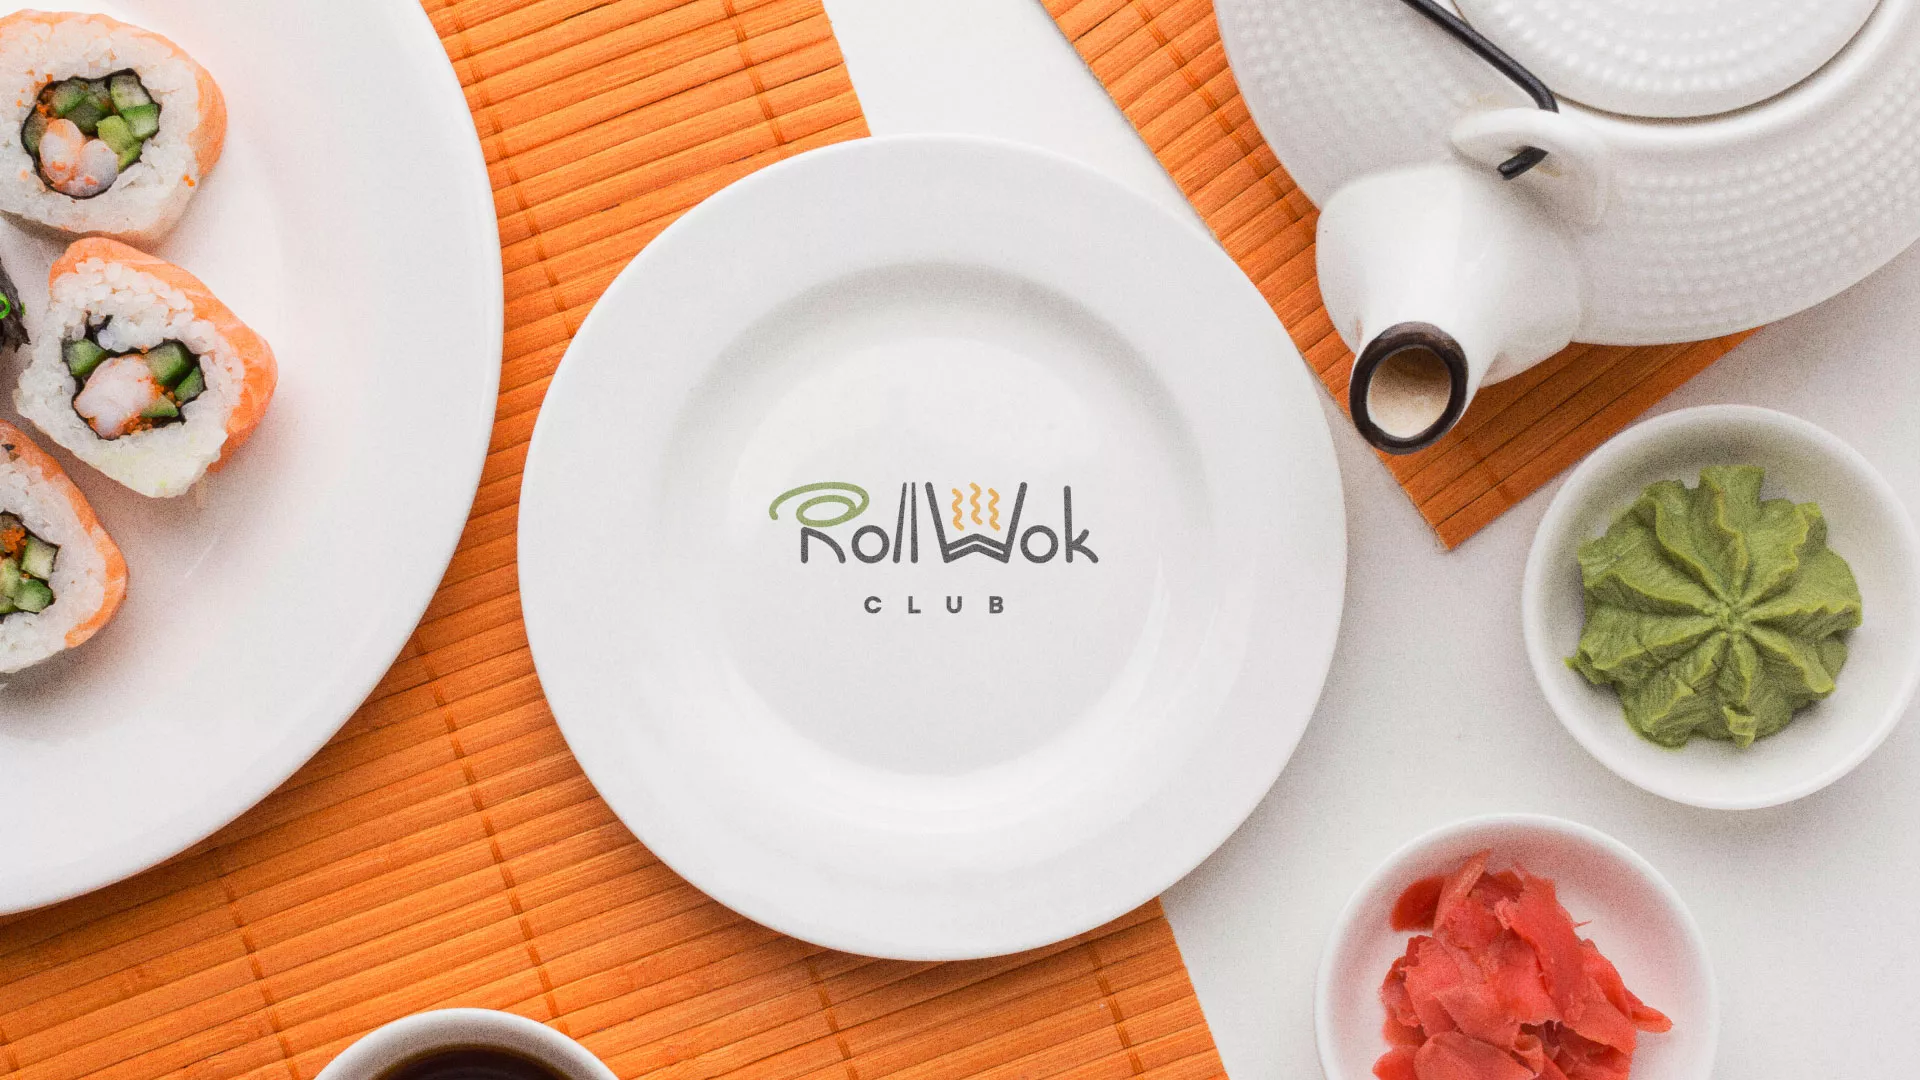 Разработка логотипа и фирменного стиля суши-бара «Roll Wok Club» в Устюжне